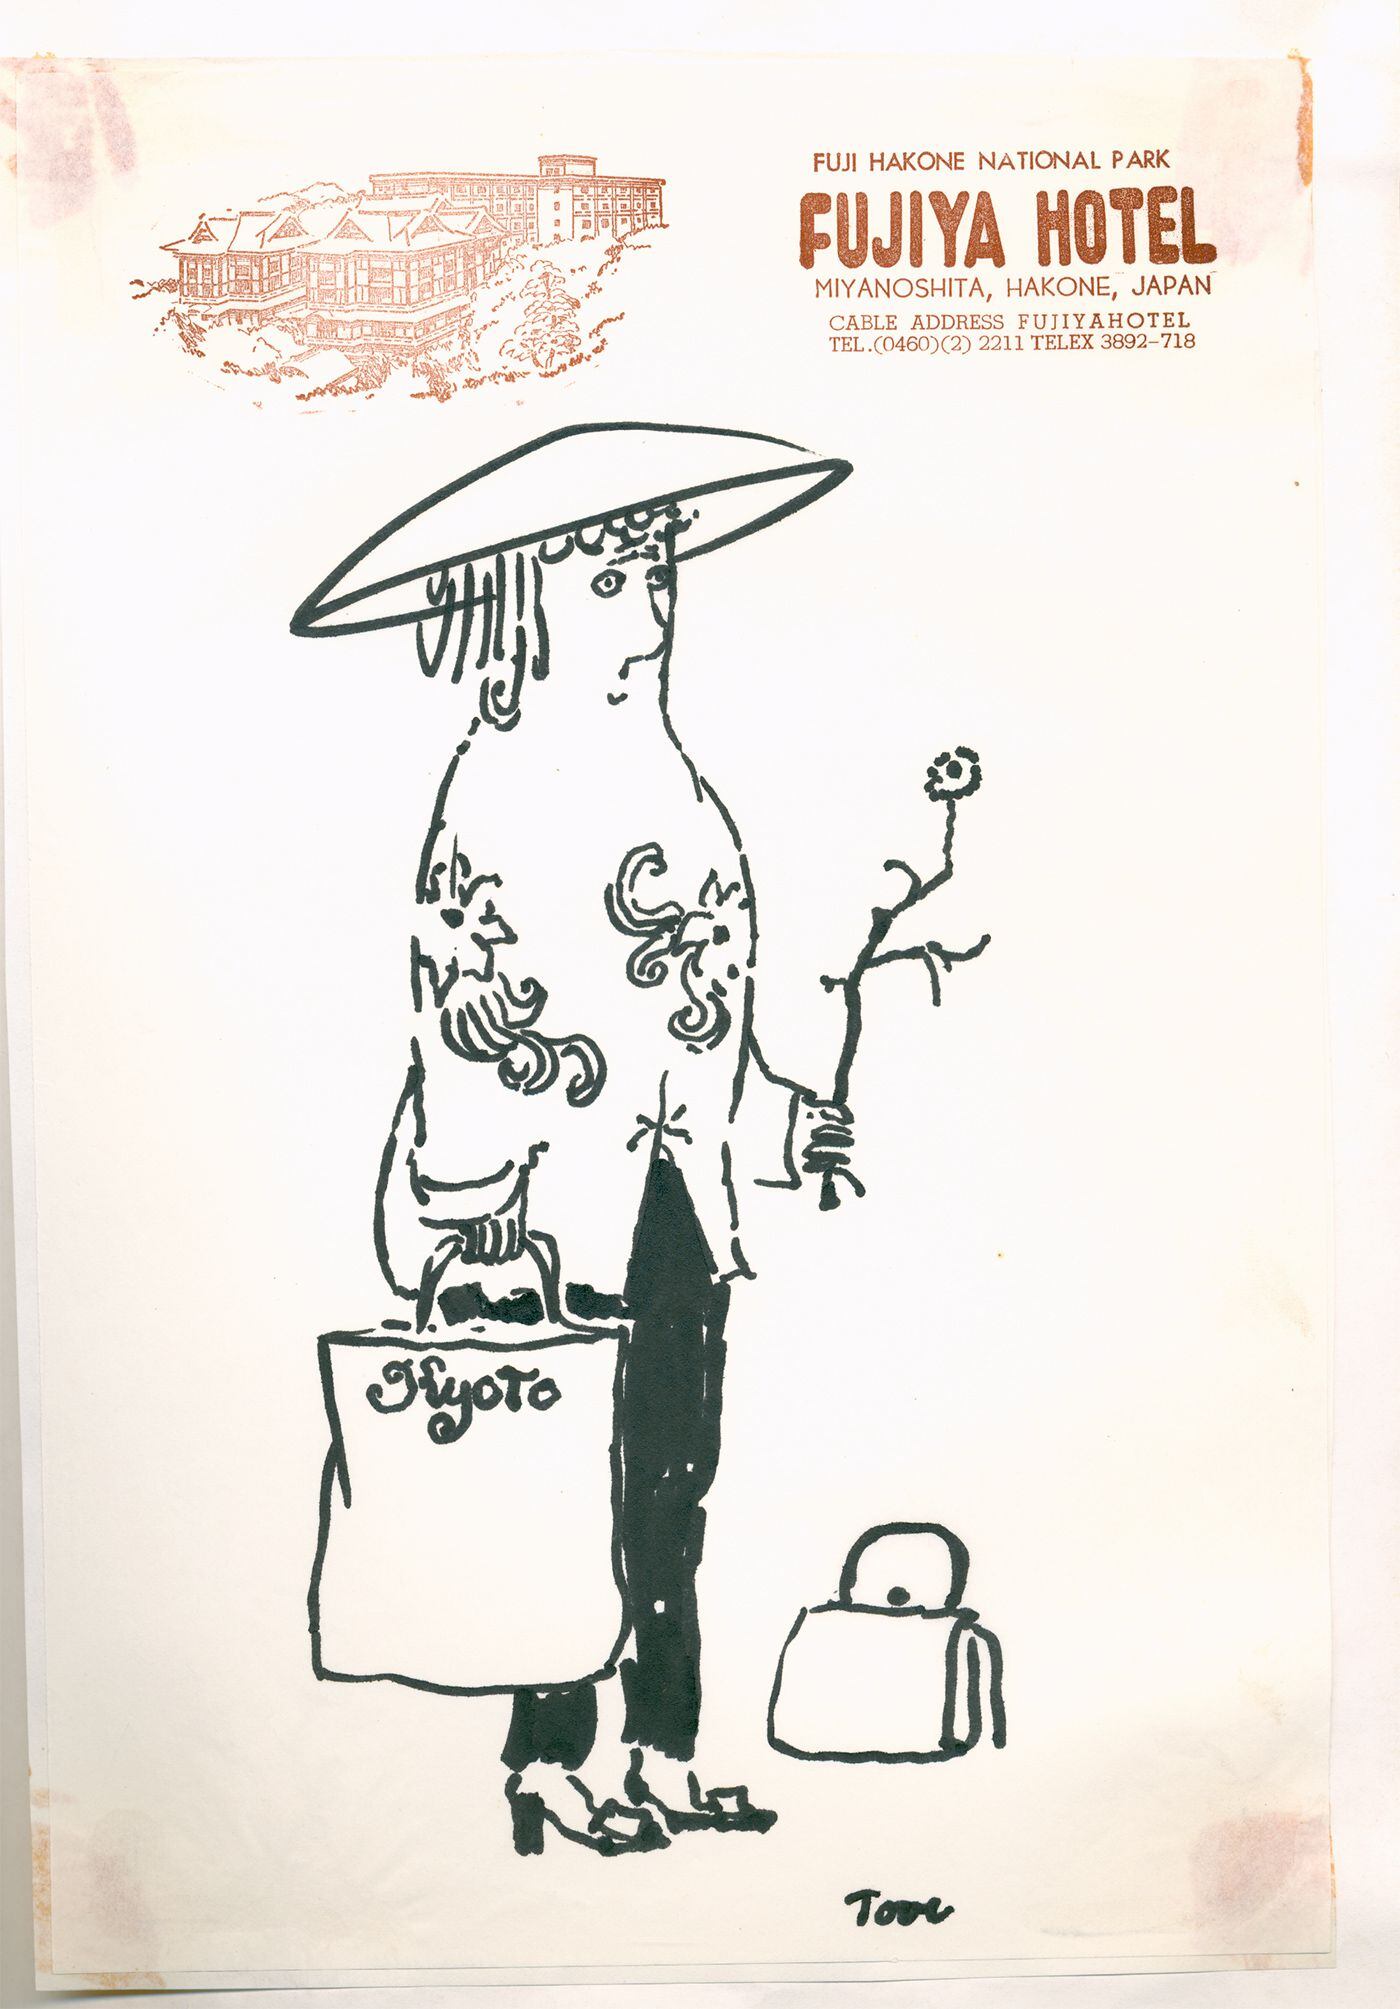 Uno de los bocetos que solía realizar durante sus viajes, en este caso en el juego de cartas del hotel Fujiya de Hakone (Japón), ‘Sin título’, 197.